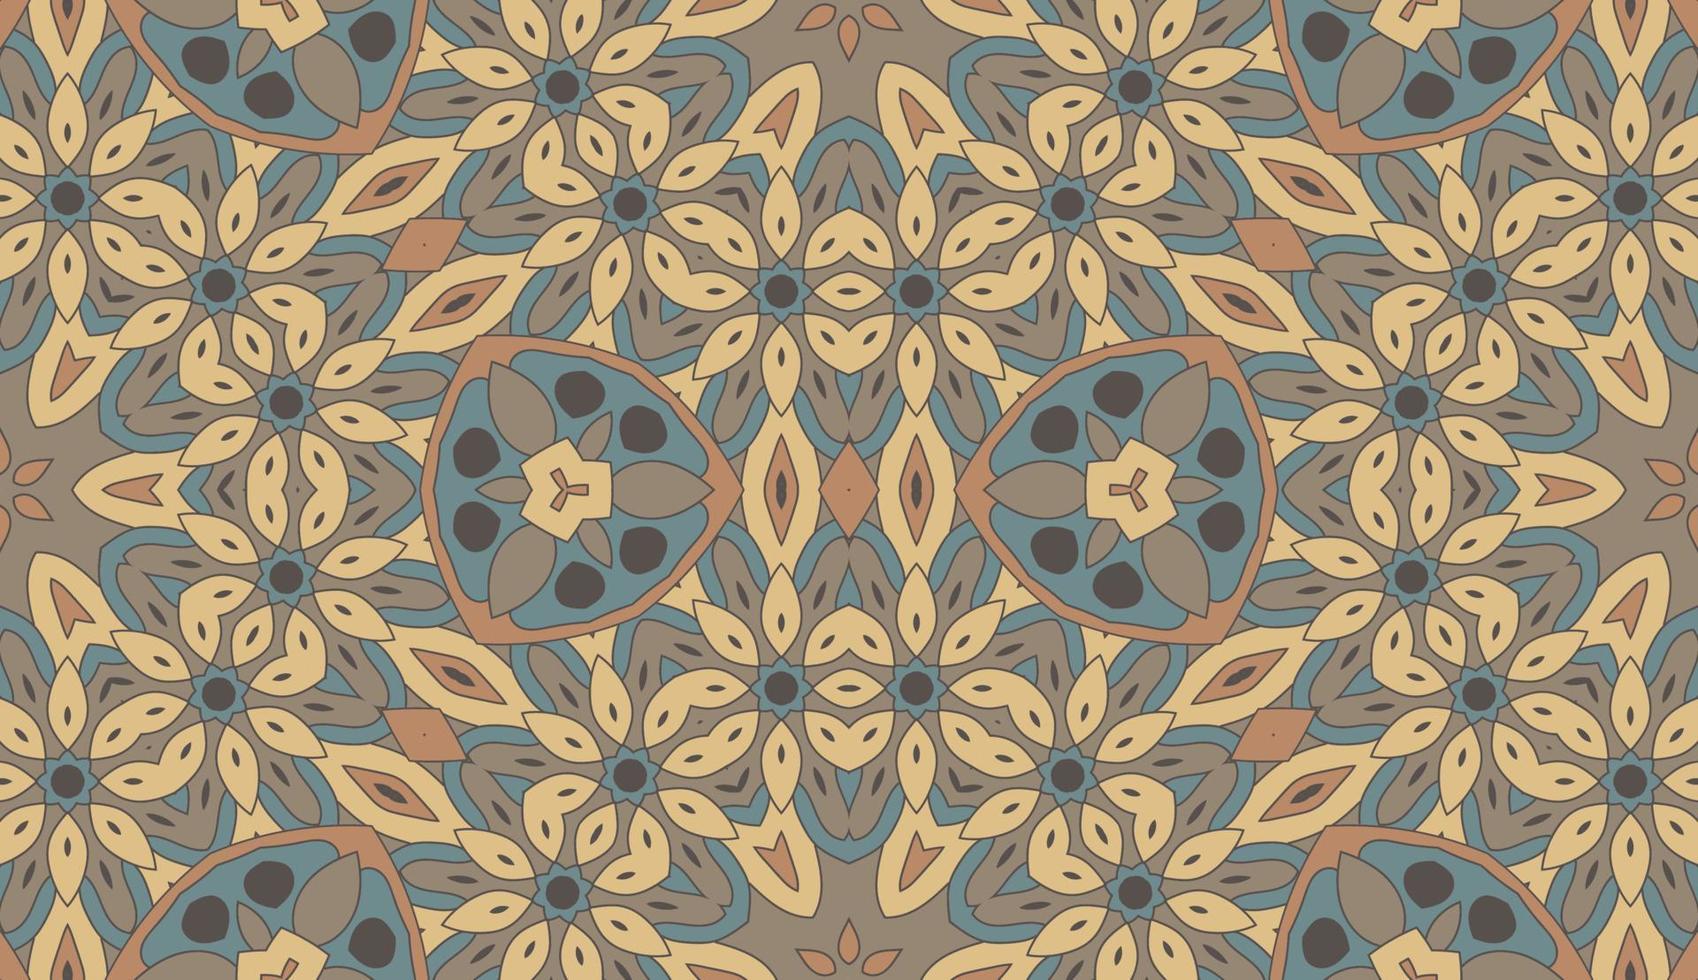 abstrato colorido doodle flor geométrica padrão sem emenda. fundo floral. mosaico de caleidoscópio, geo telha de ornamento de linha fina. vetor